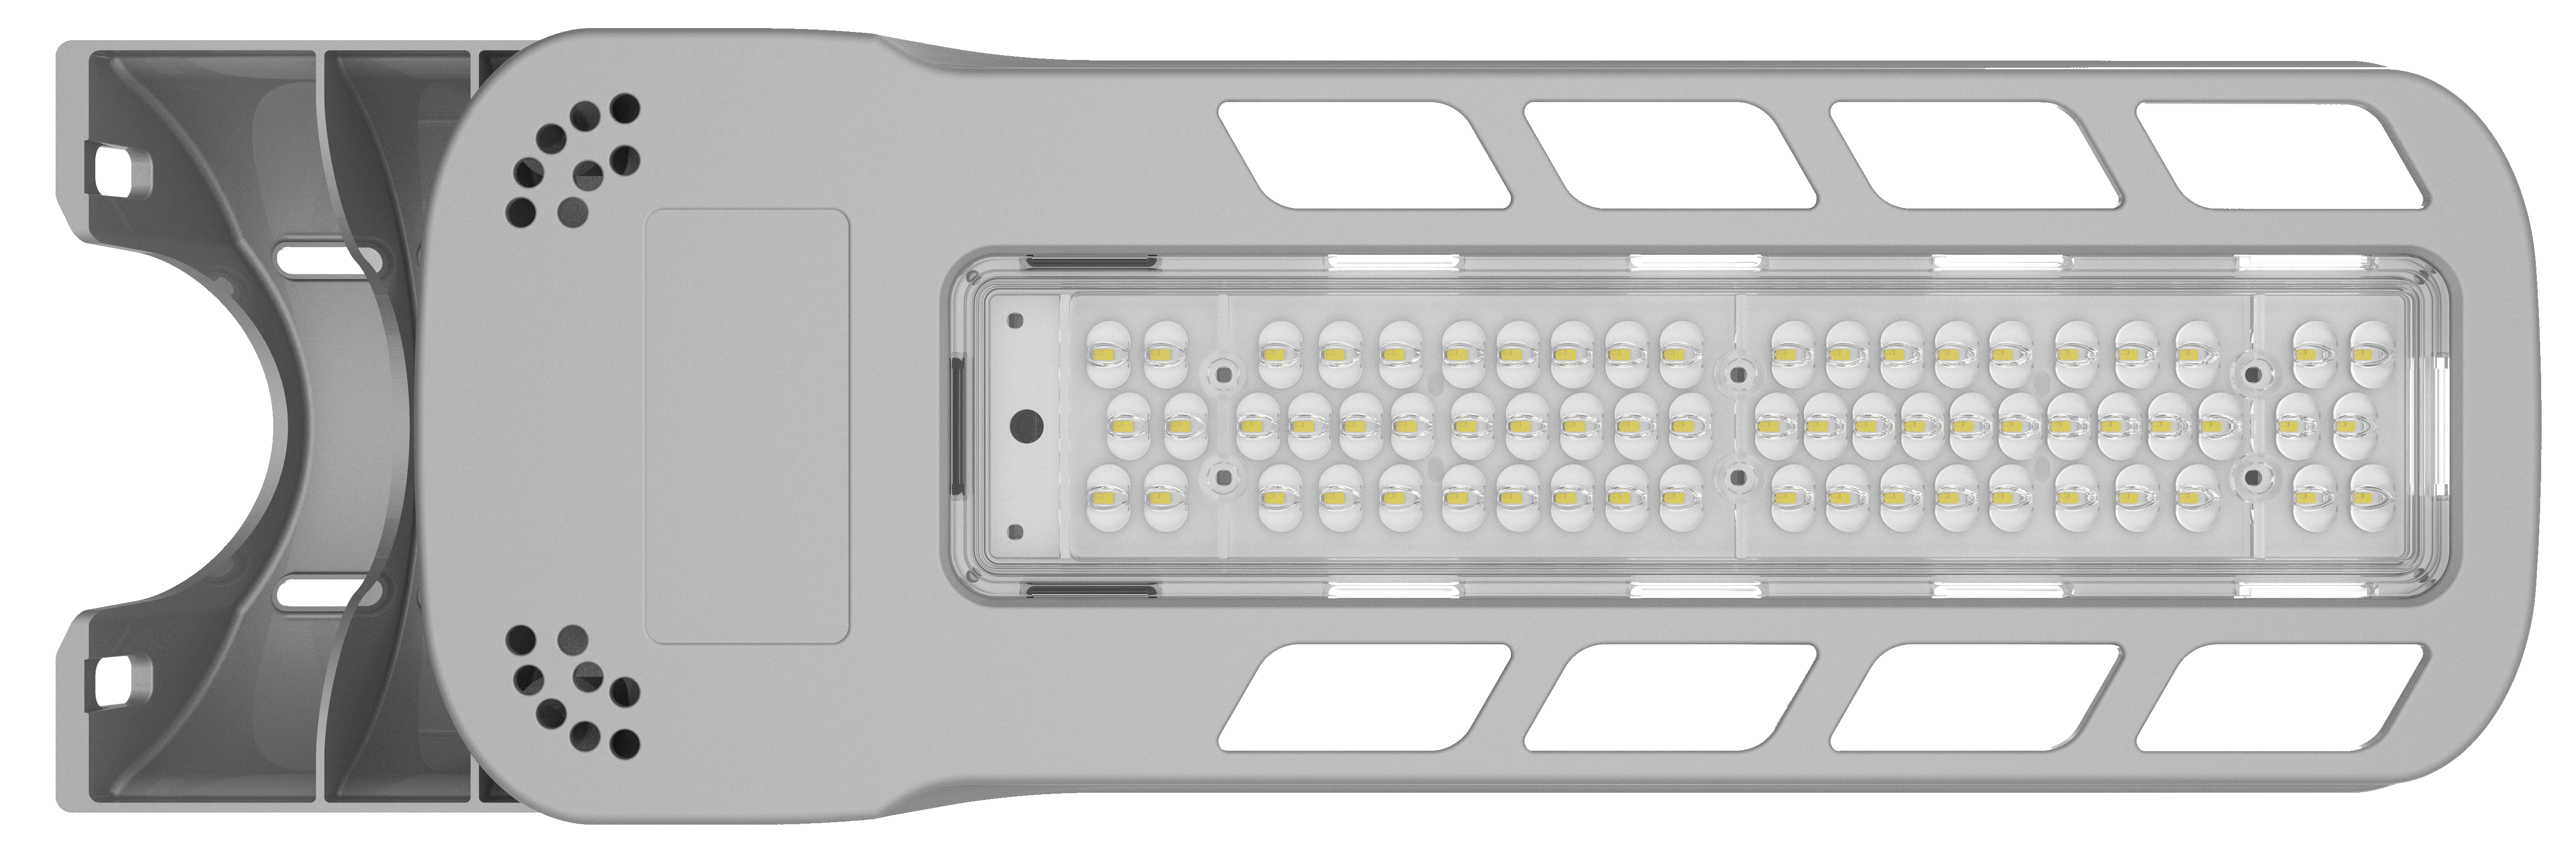 Réverbère à LED de type outre-mer série RK 